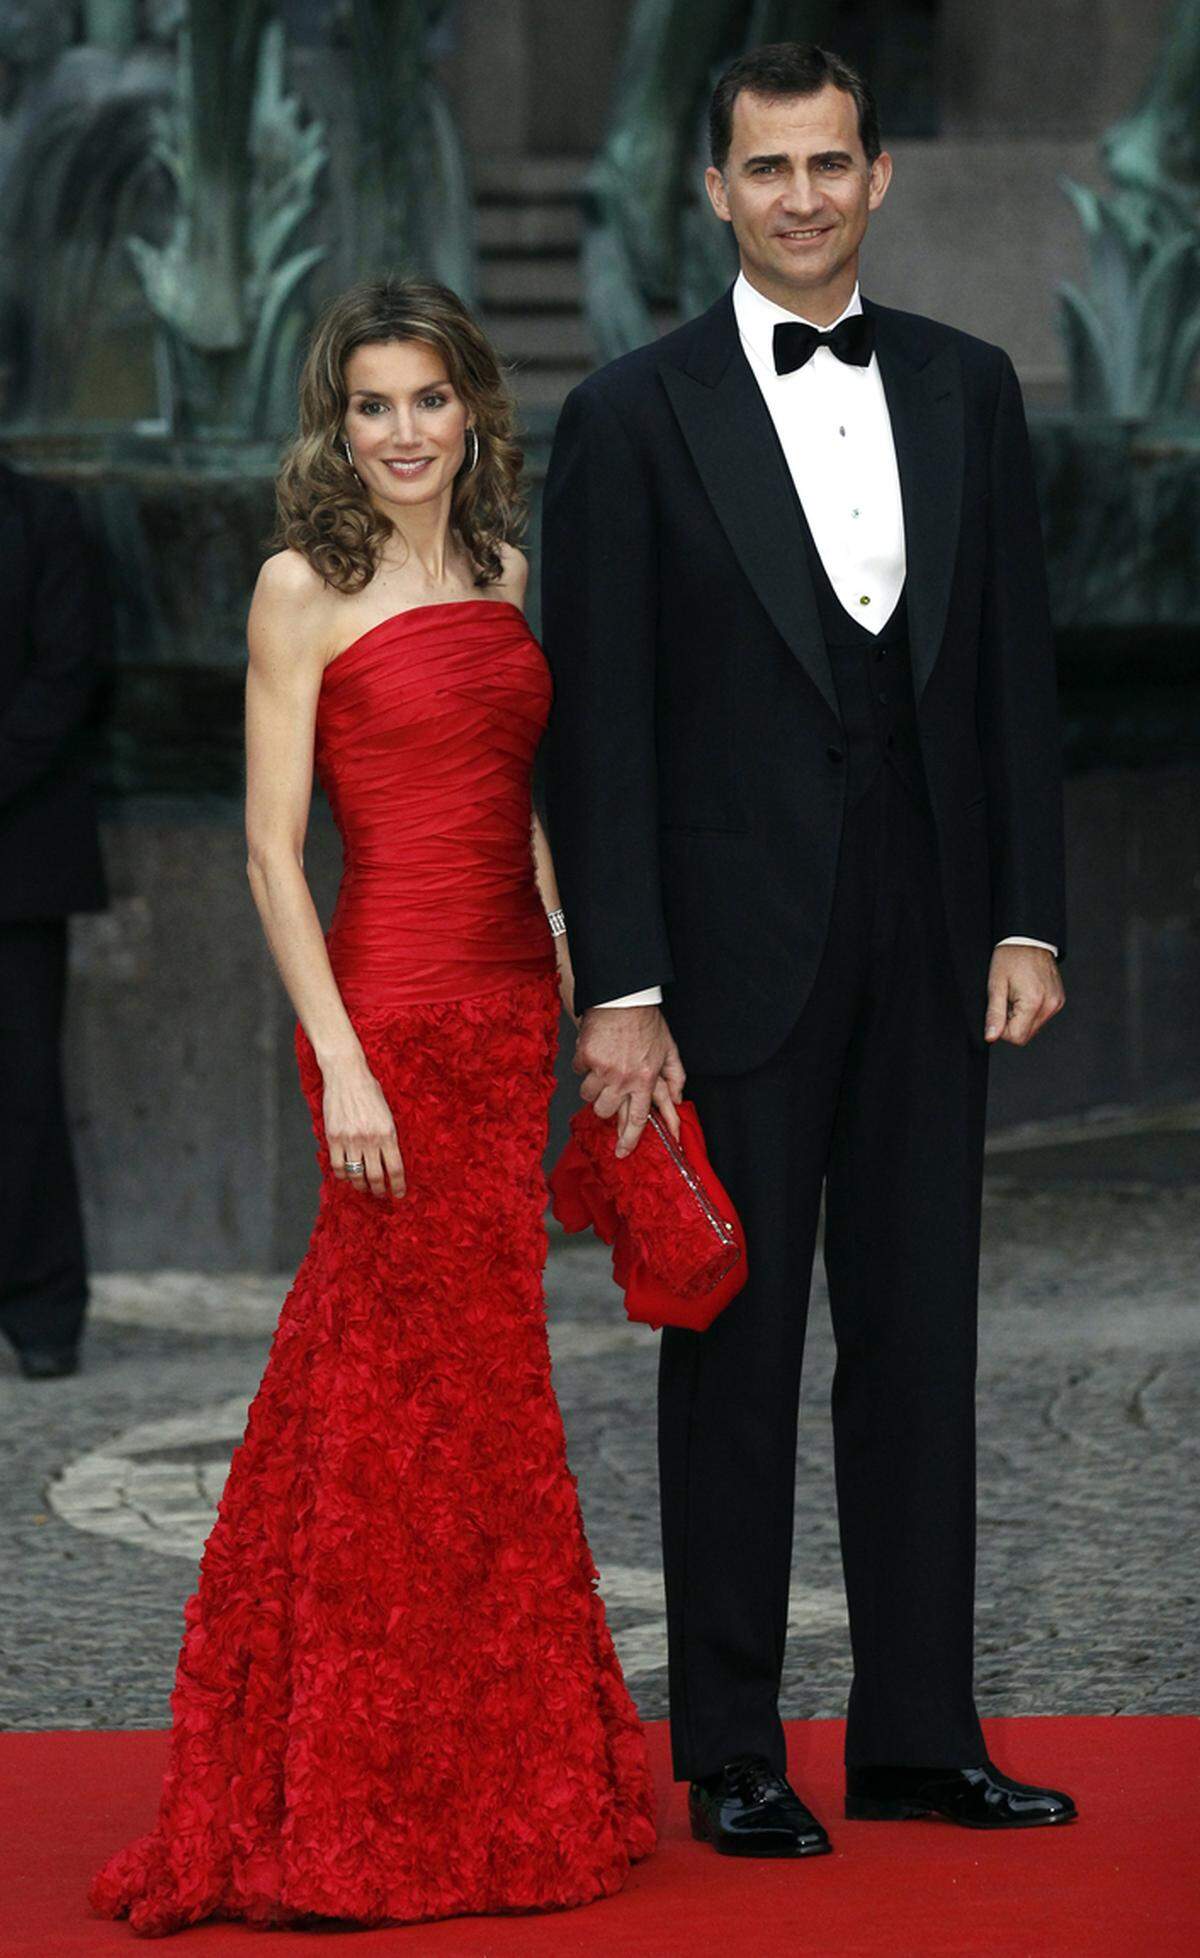 Üppige Roben in kräftigen Tönen trägt Spaniens Königin in spe nur selten. In Rot konnte Letizia bei der Gala zur Hochzeit von Schwedens Kronprinzessin Victoria überzeugen.